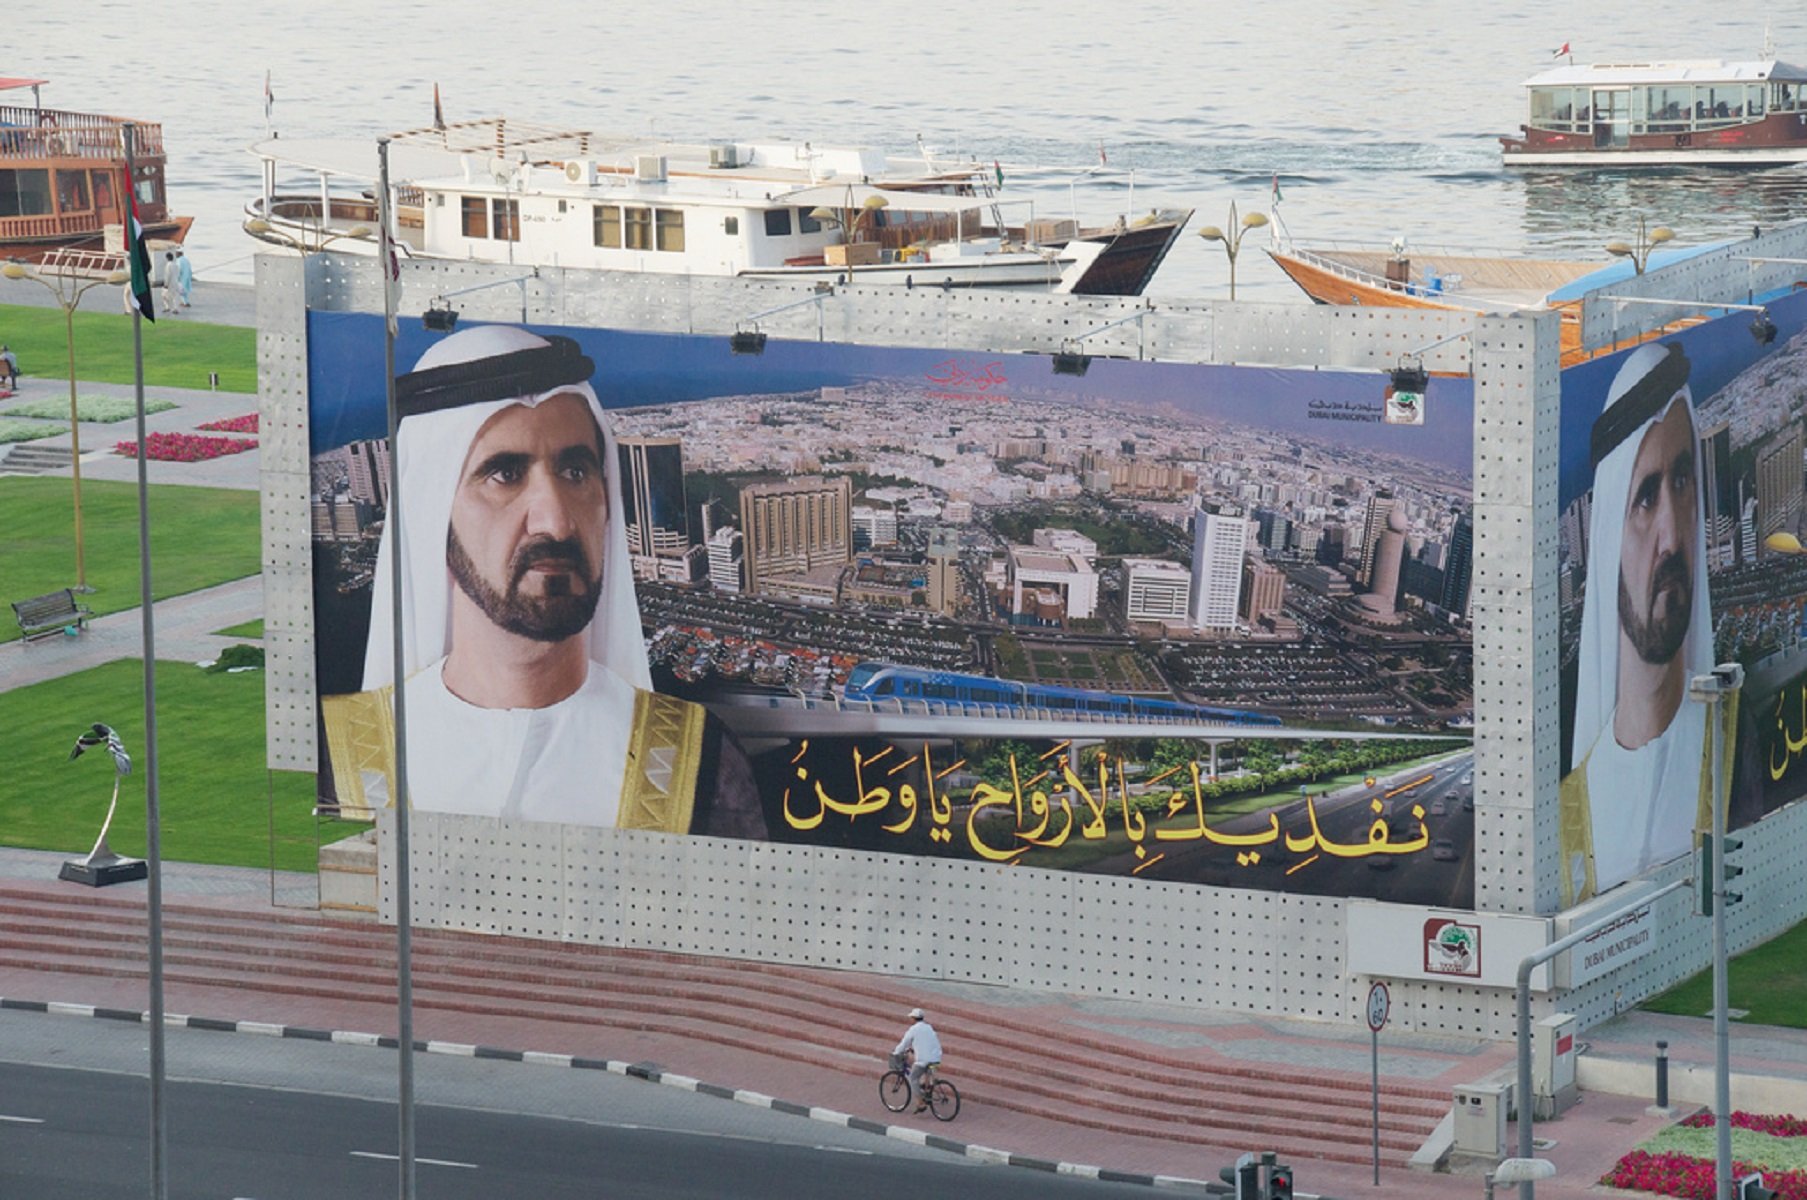 El emir de Dubái (y su riqueza) dejan boquiabierta a Barcelona